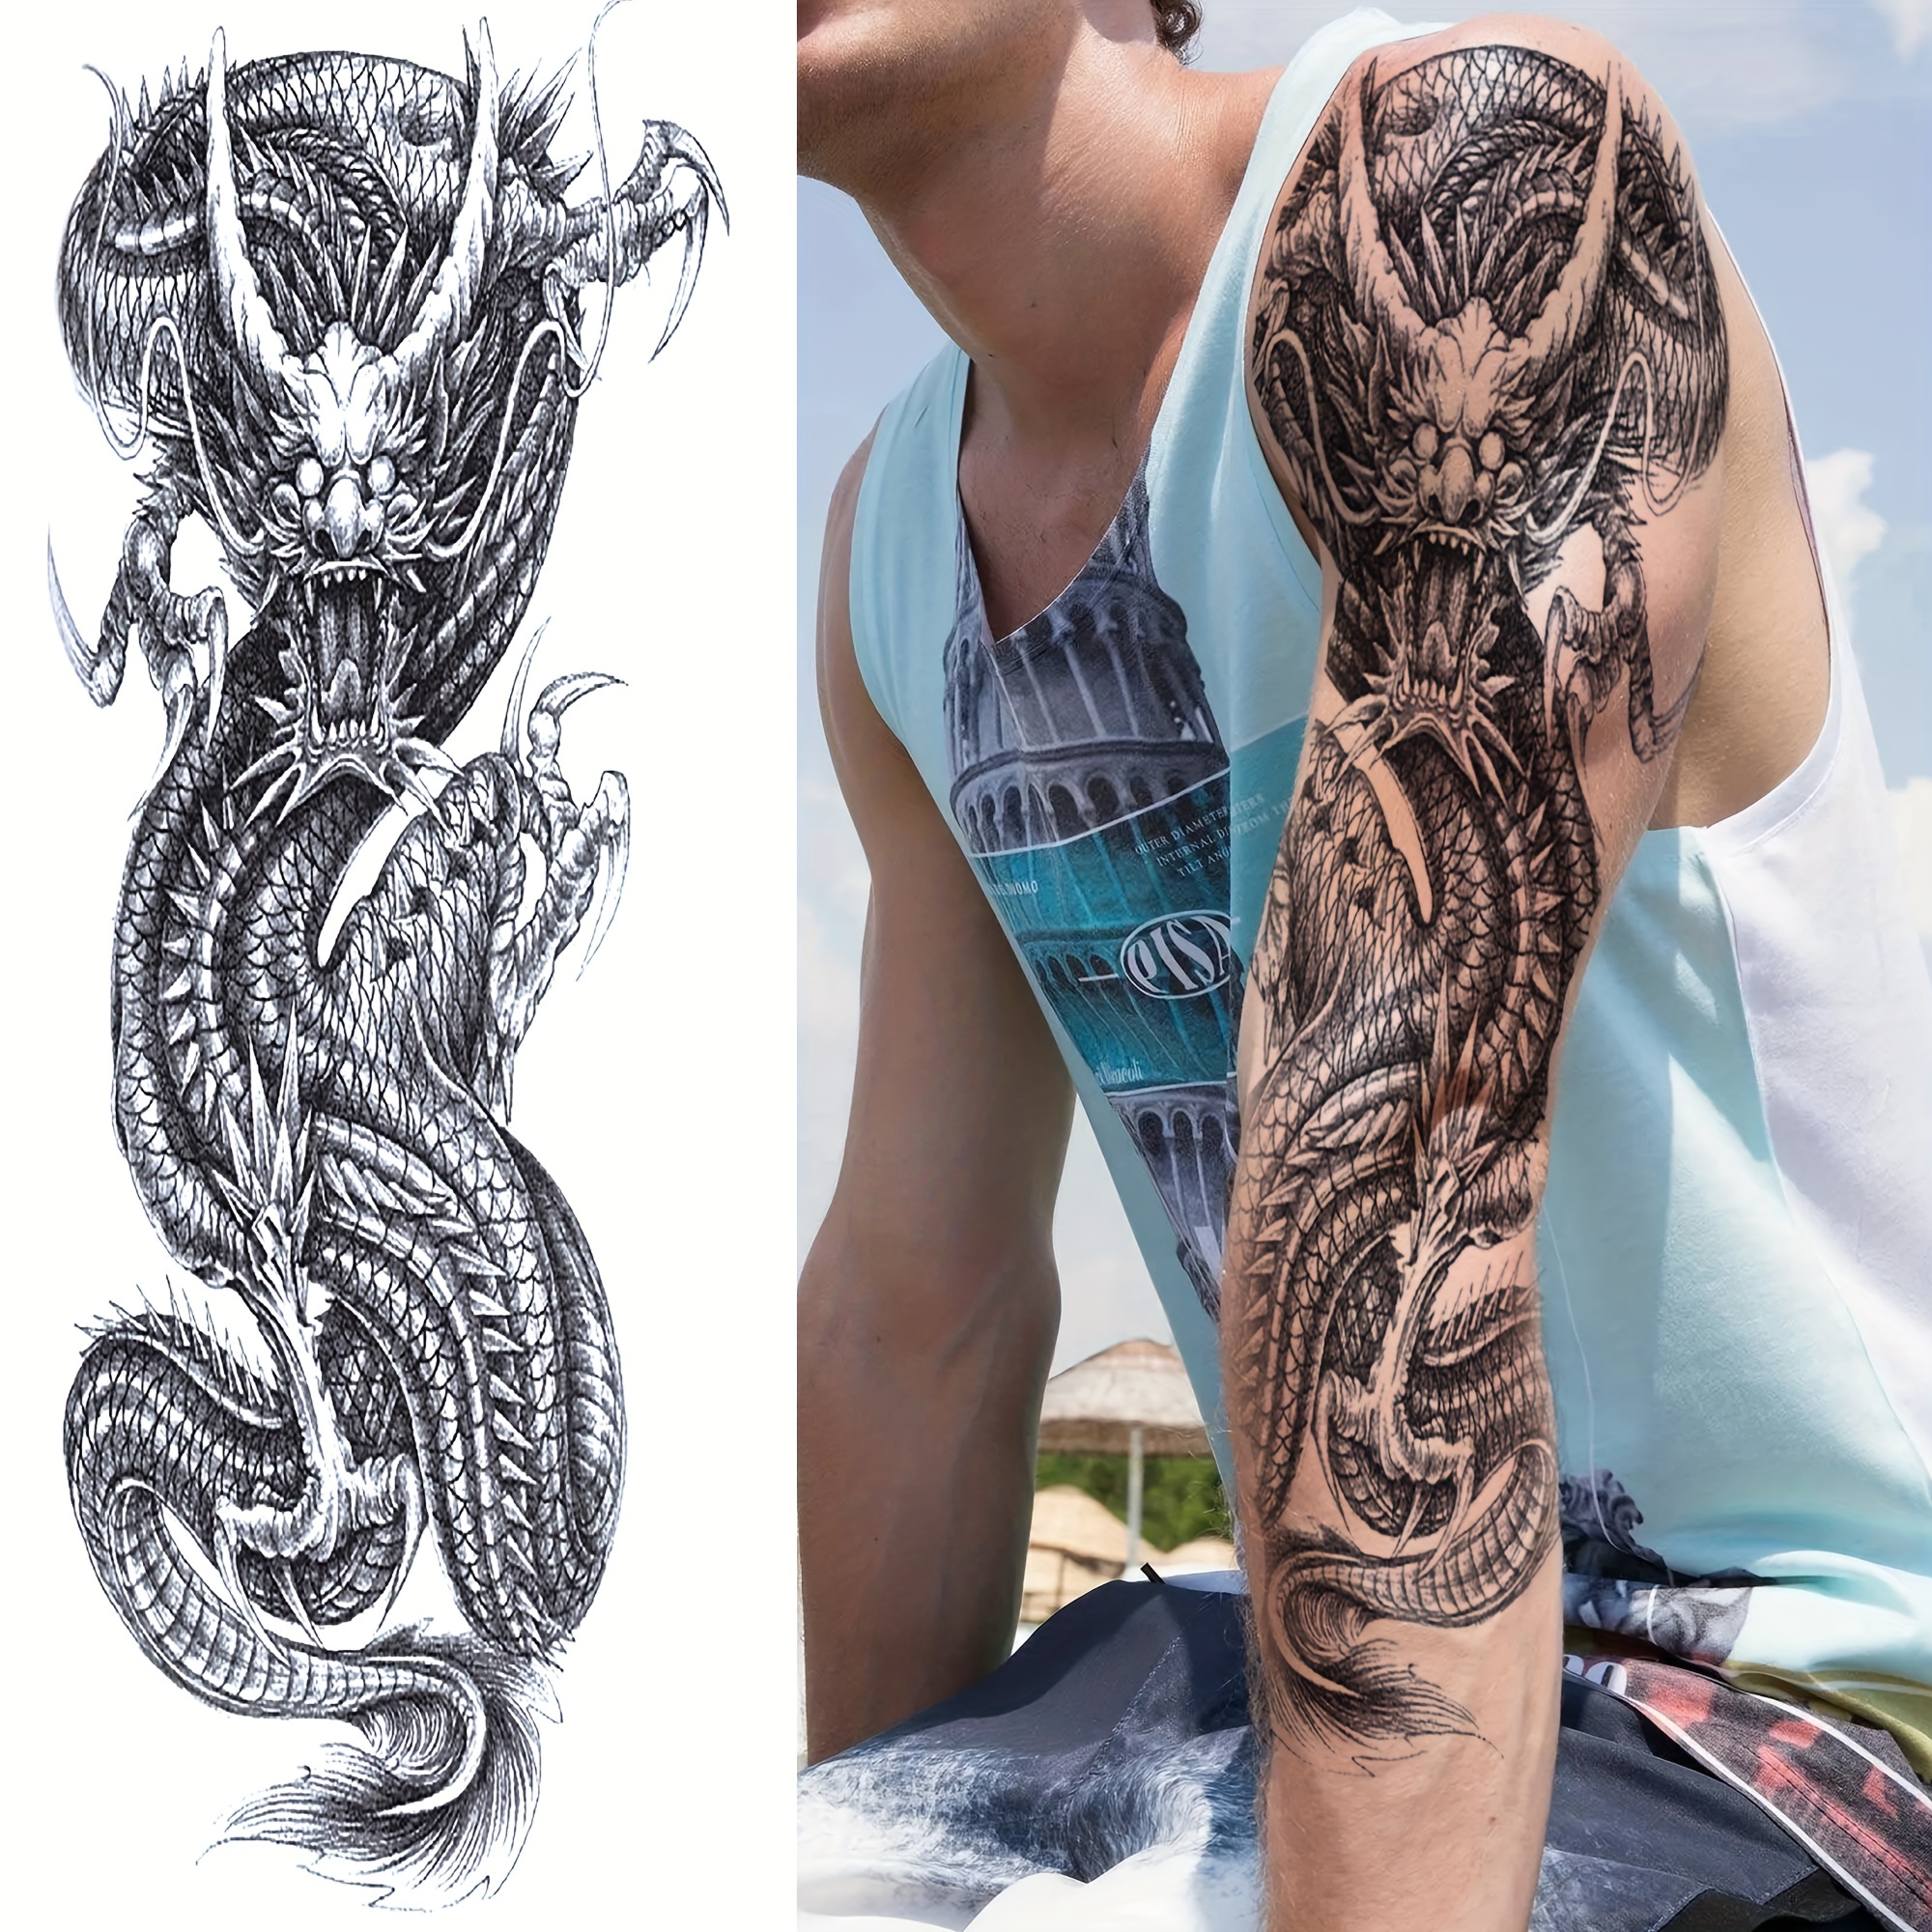 Realistic Maori Tribal Totem Full Arm Temporary Tattoo Sleeve Tattoos  Sticker